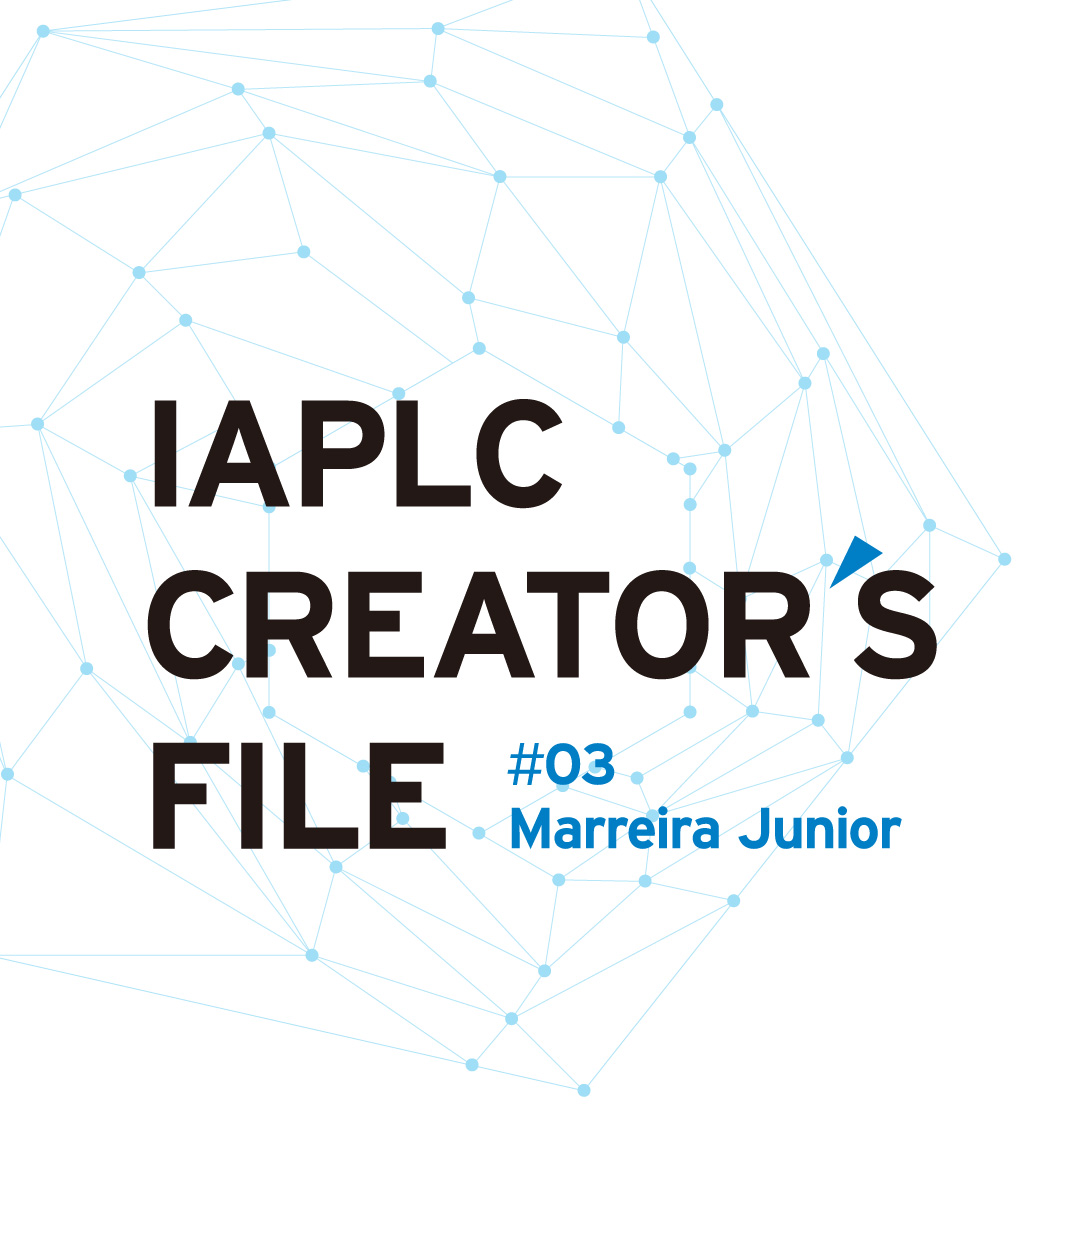 IAPLC CREATOR’S FILE #03 Marreira Junior